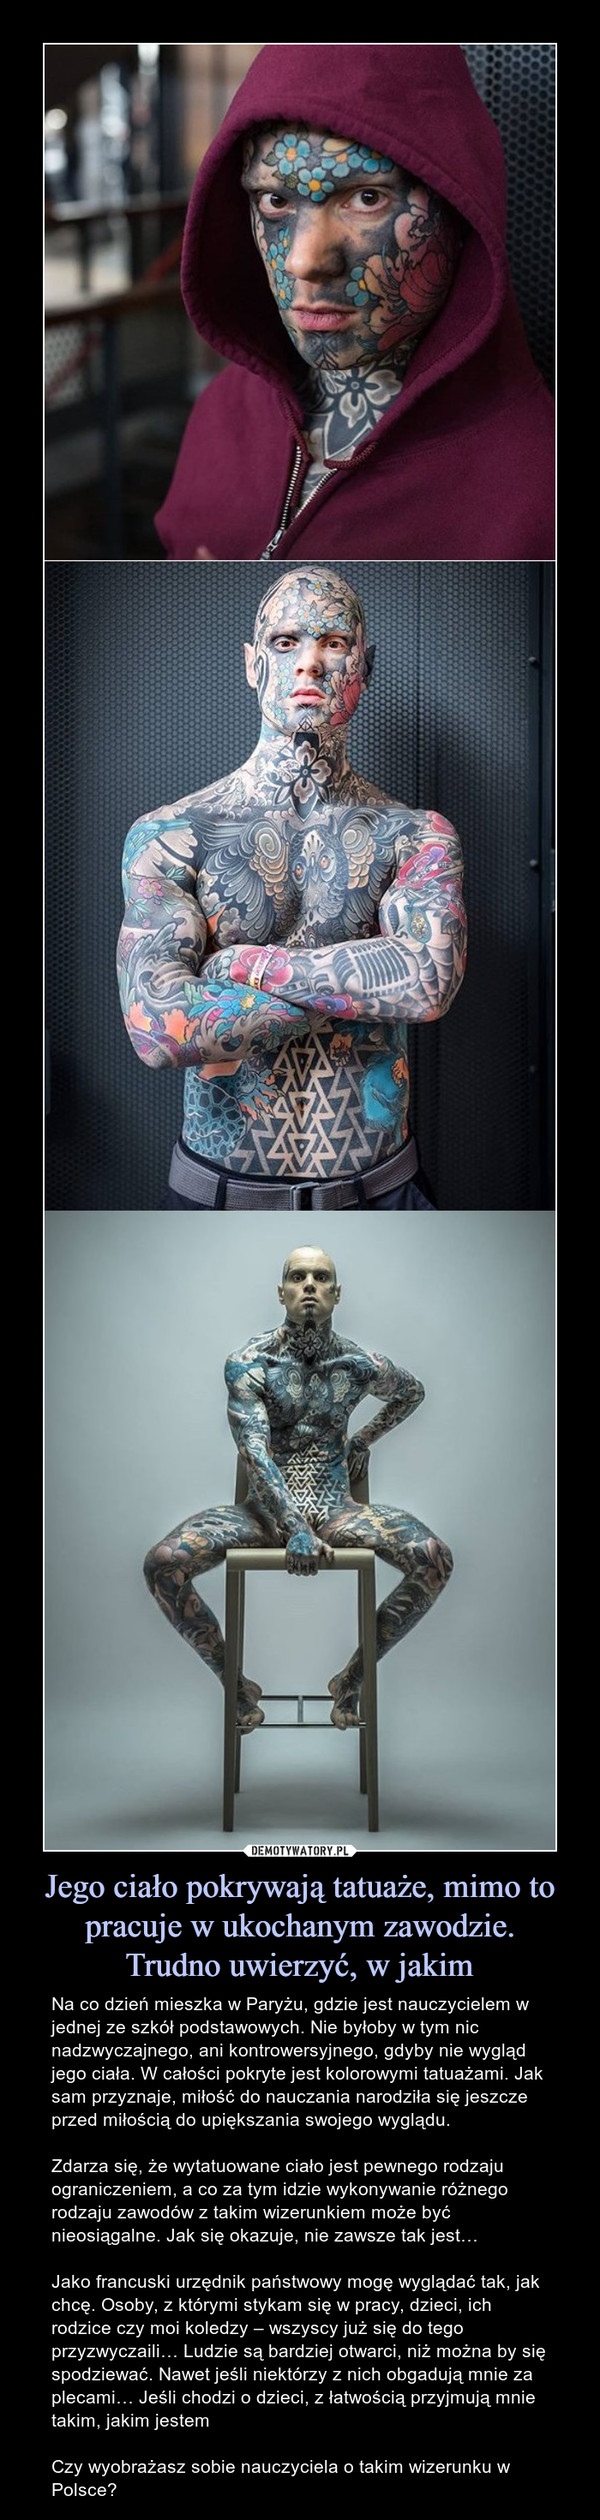 Jego ciało pokrywają tatuaże, mimo to pracuje w ukochanym zawodzie.
Trudno uwierzyć, w jakim